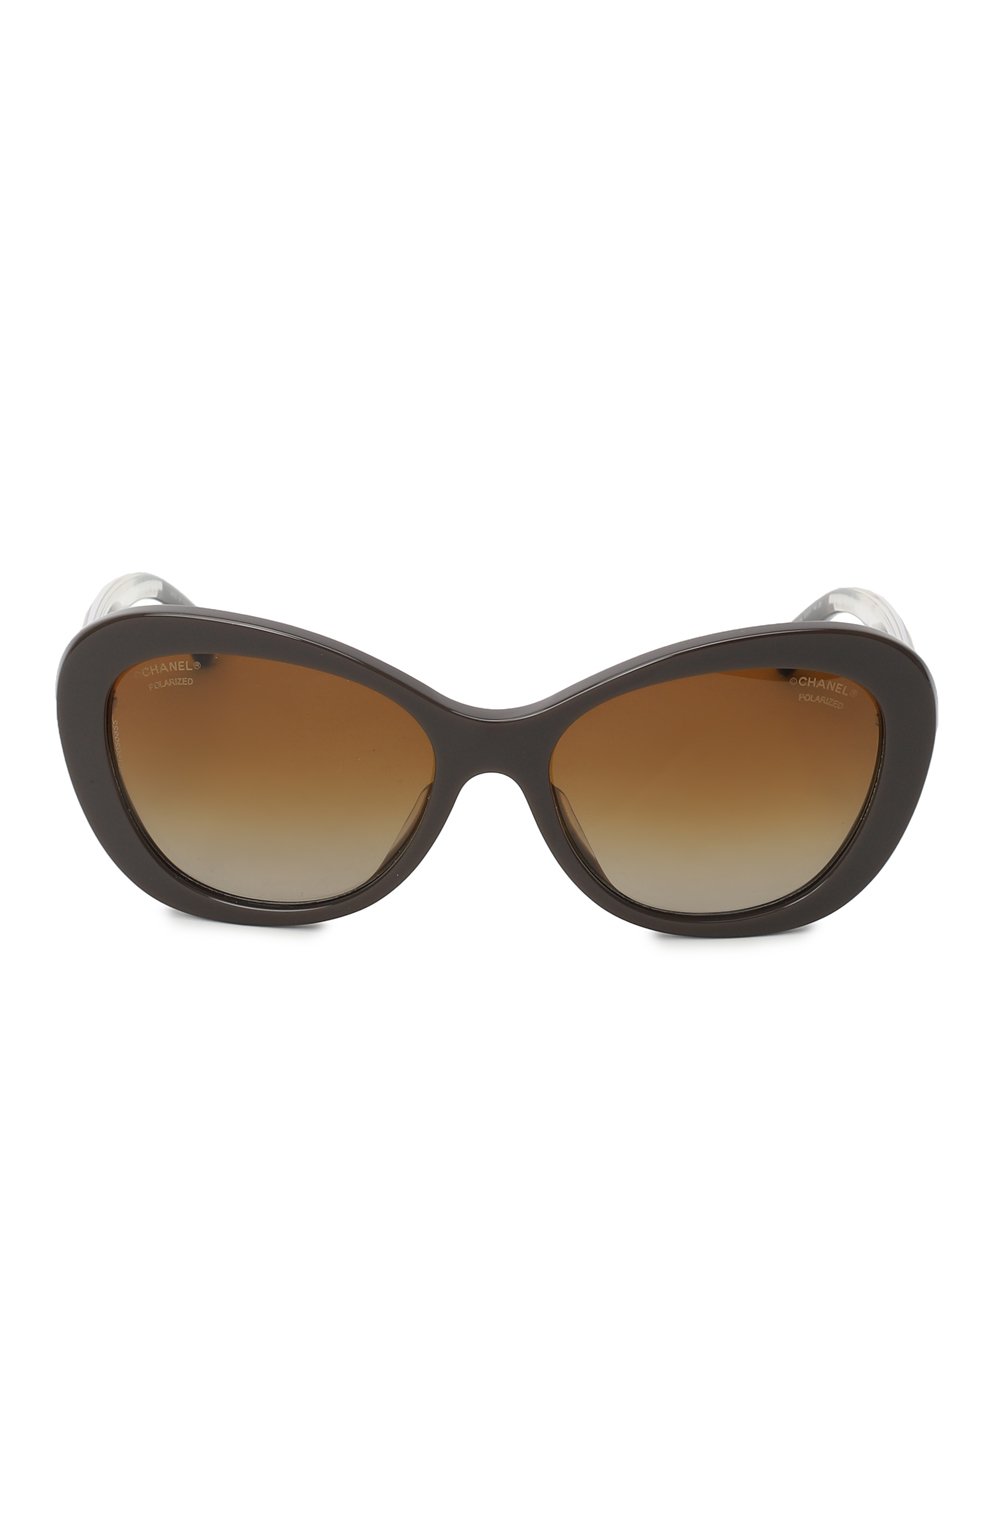 Солнцезащитные очки | Chanel | Коричневый - 2